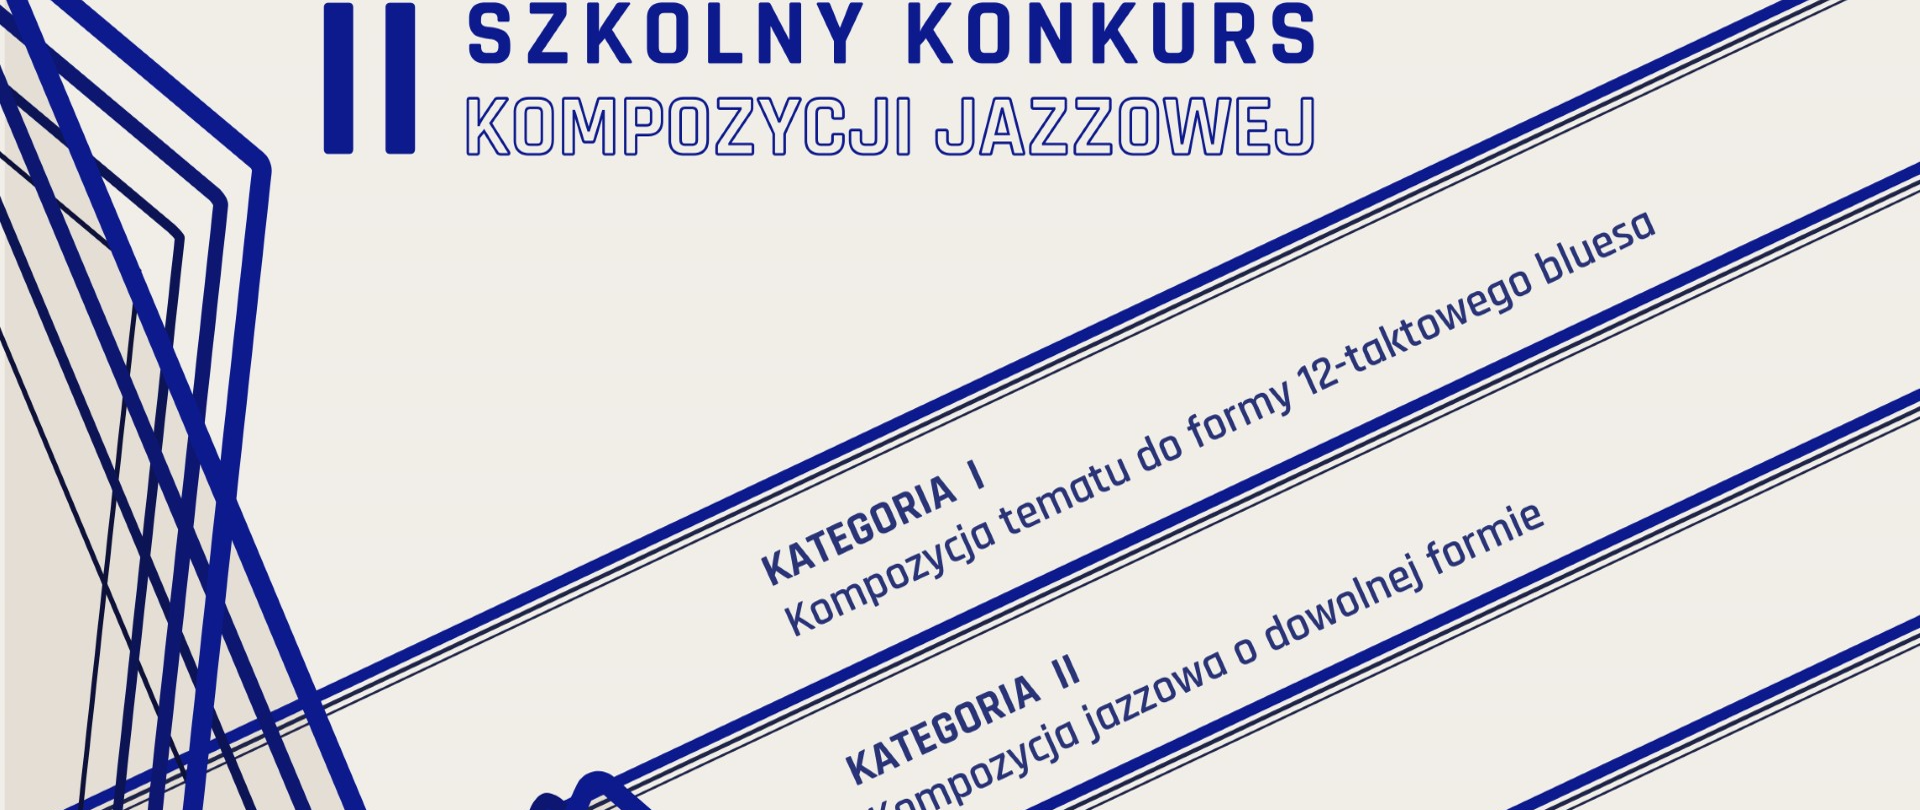 Klucz wiolinowy na 5-ciolini zapraszamy do udziału II Szkolny Konkurs Kompozycji Jazzowej!